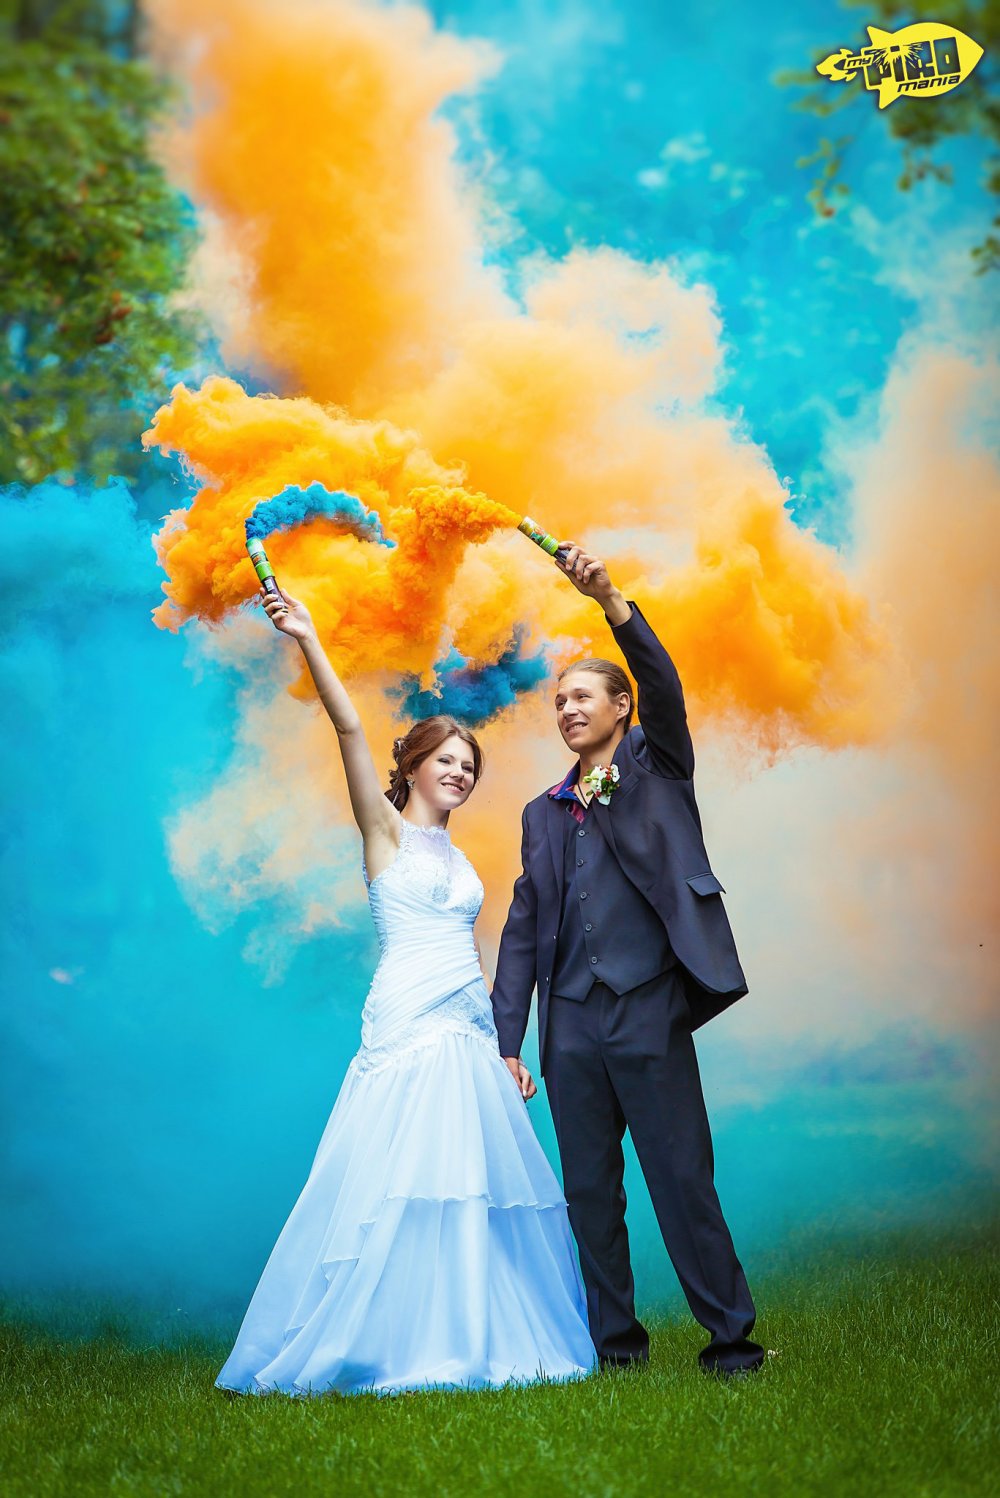 Цветной дым - простой способ получить яркие и интересные свадебные фотографии.